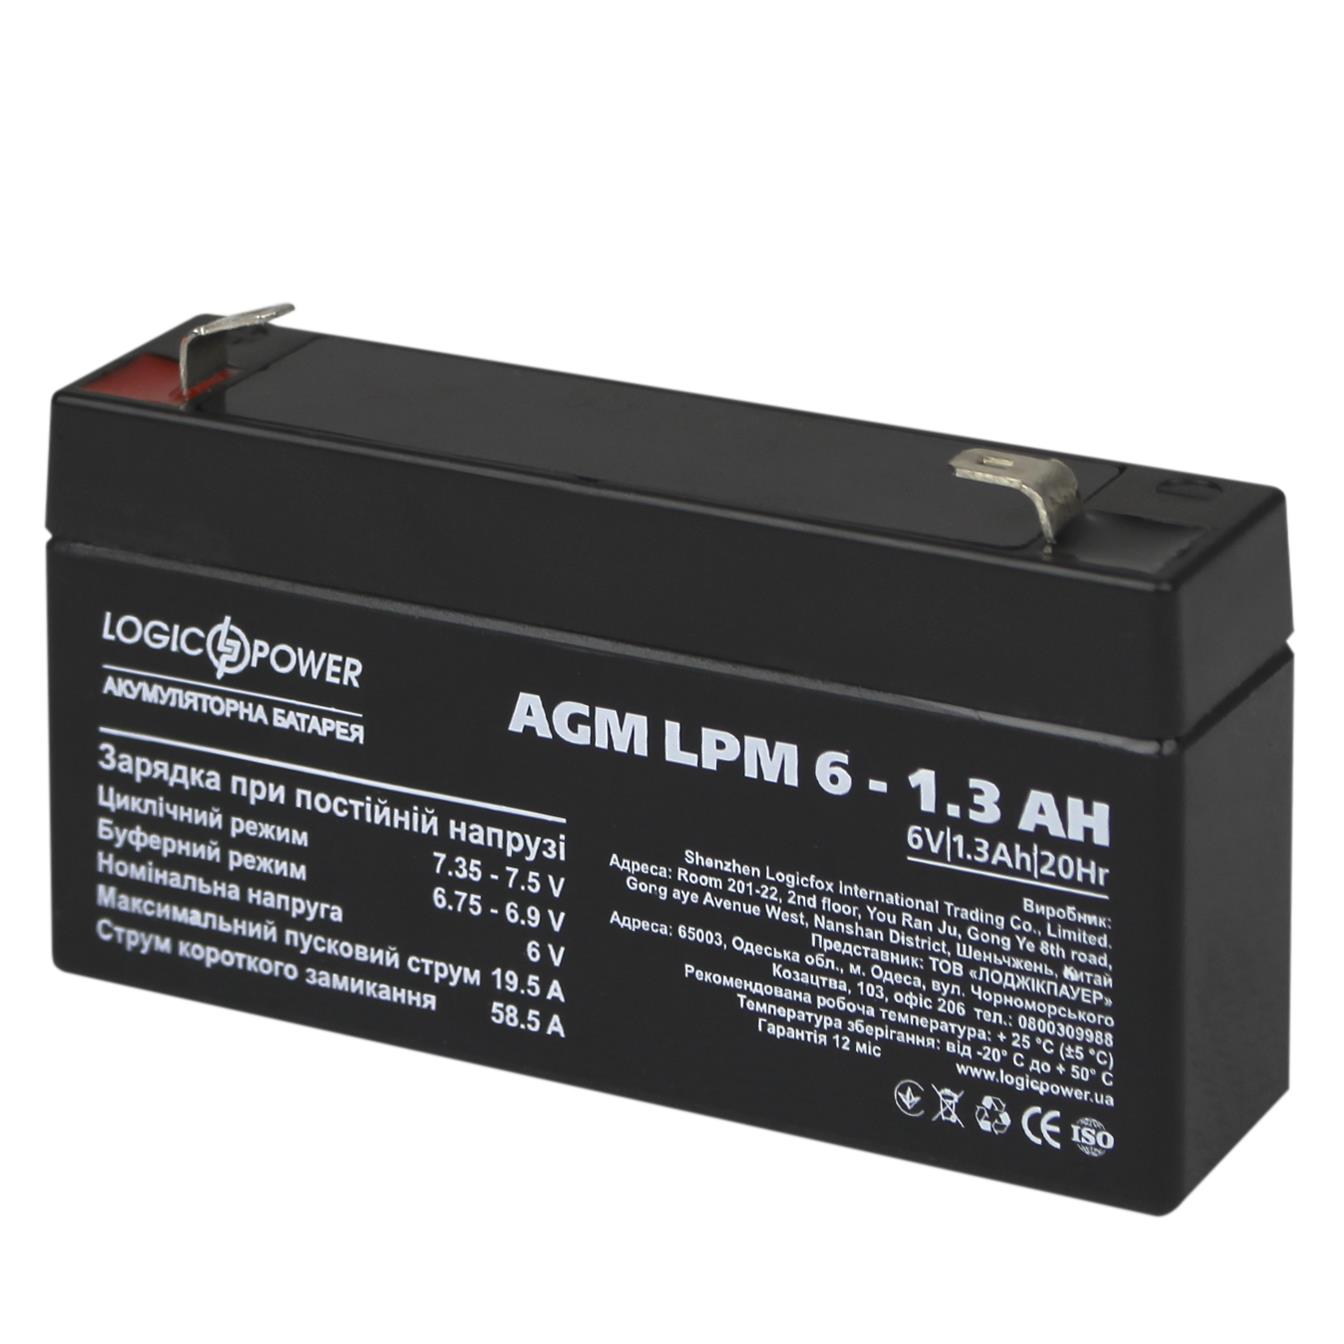 Акумулятор свинцево-кислотний LogicPower AGM LPM 6V - 1.3 Ah (4157) в інтернет-магазині, головне фото